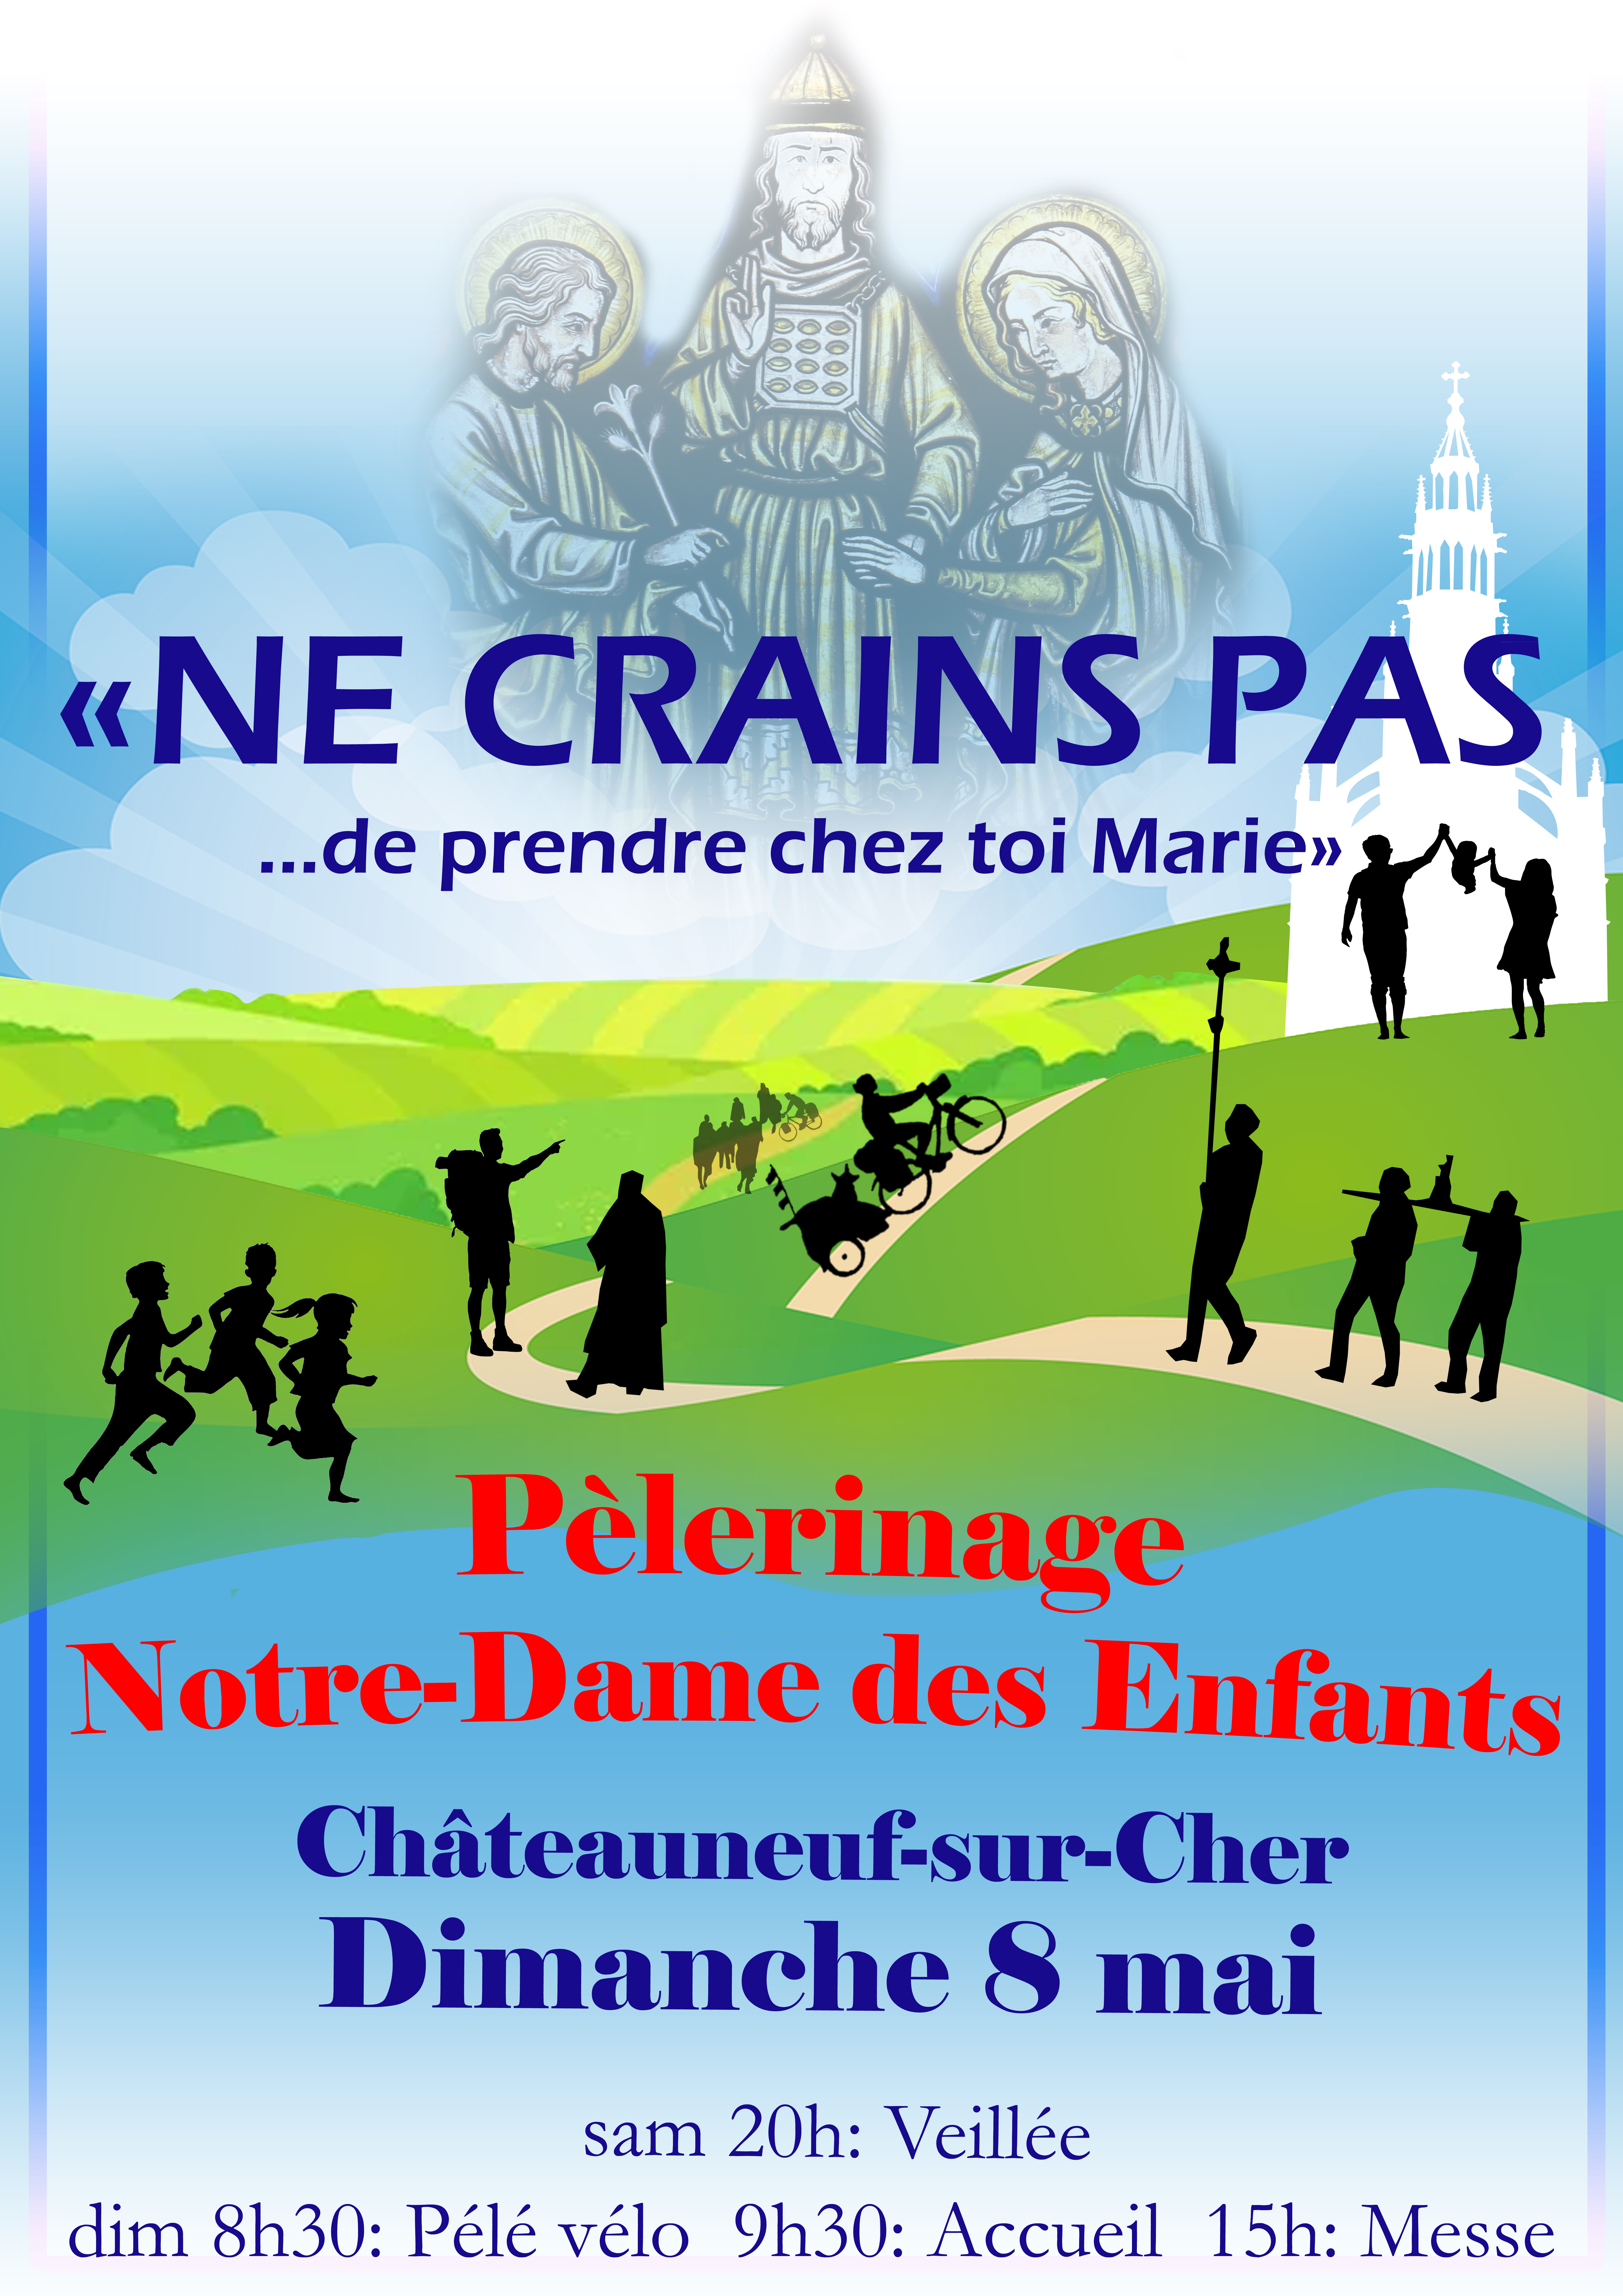 Pélerinage à Notre-Dame des Enfants le 8 mai 2022 à Châteauneuf-sur-Cher